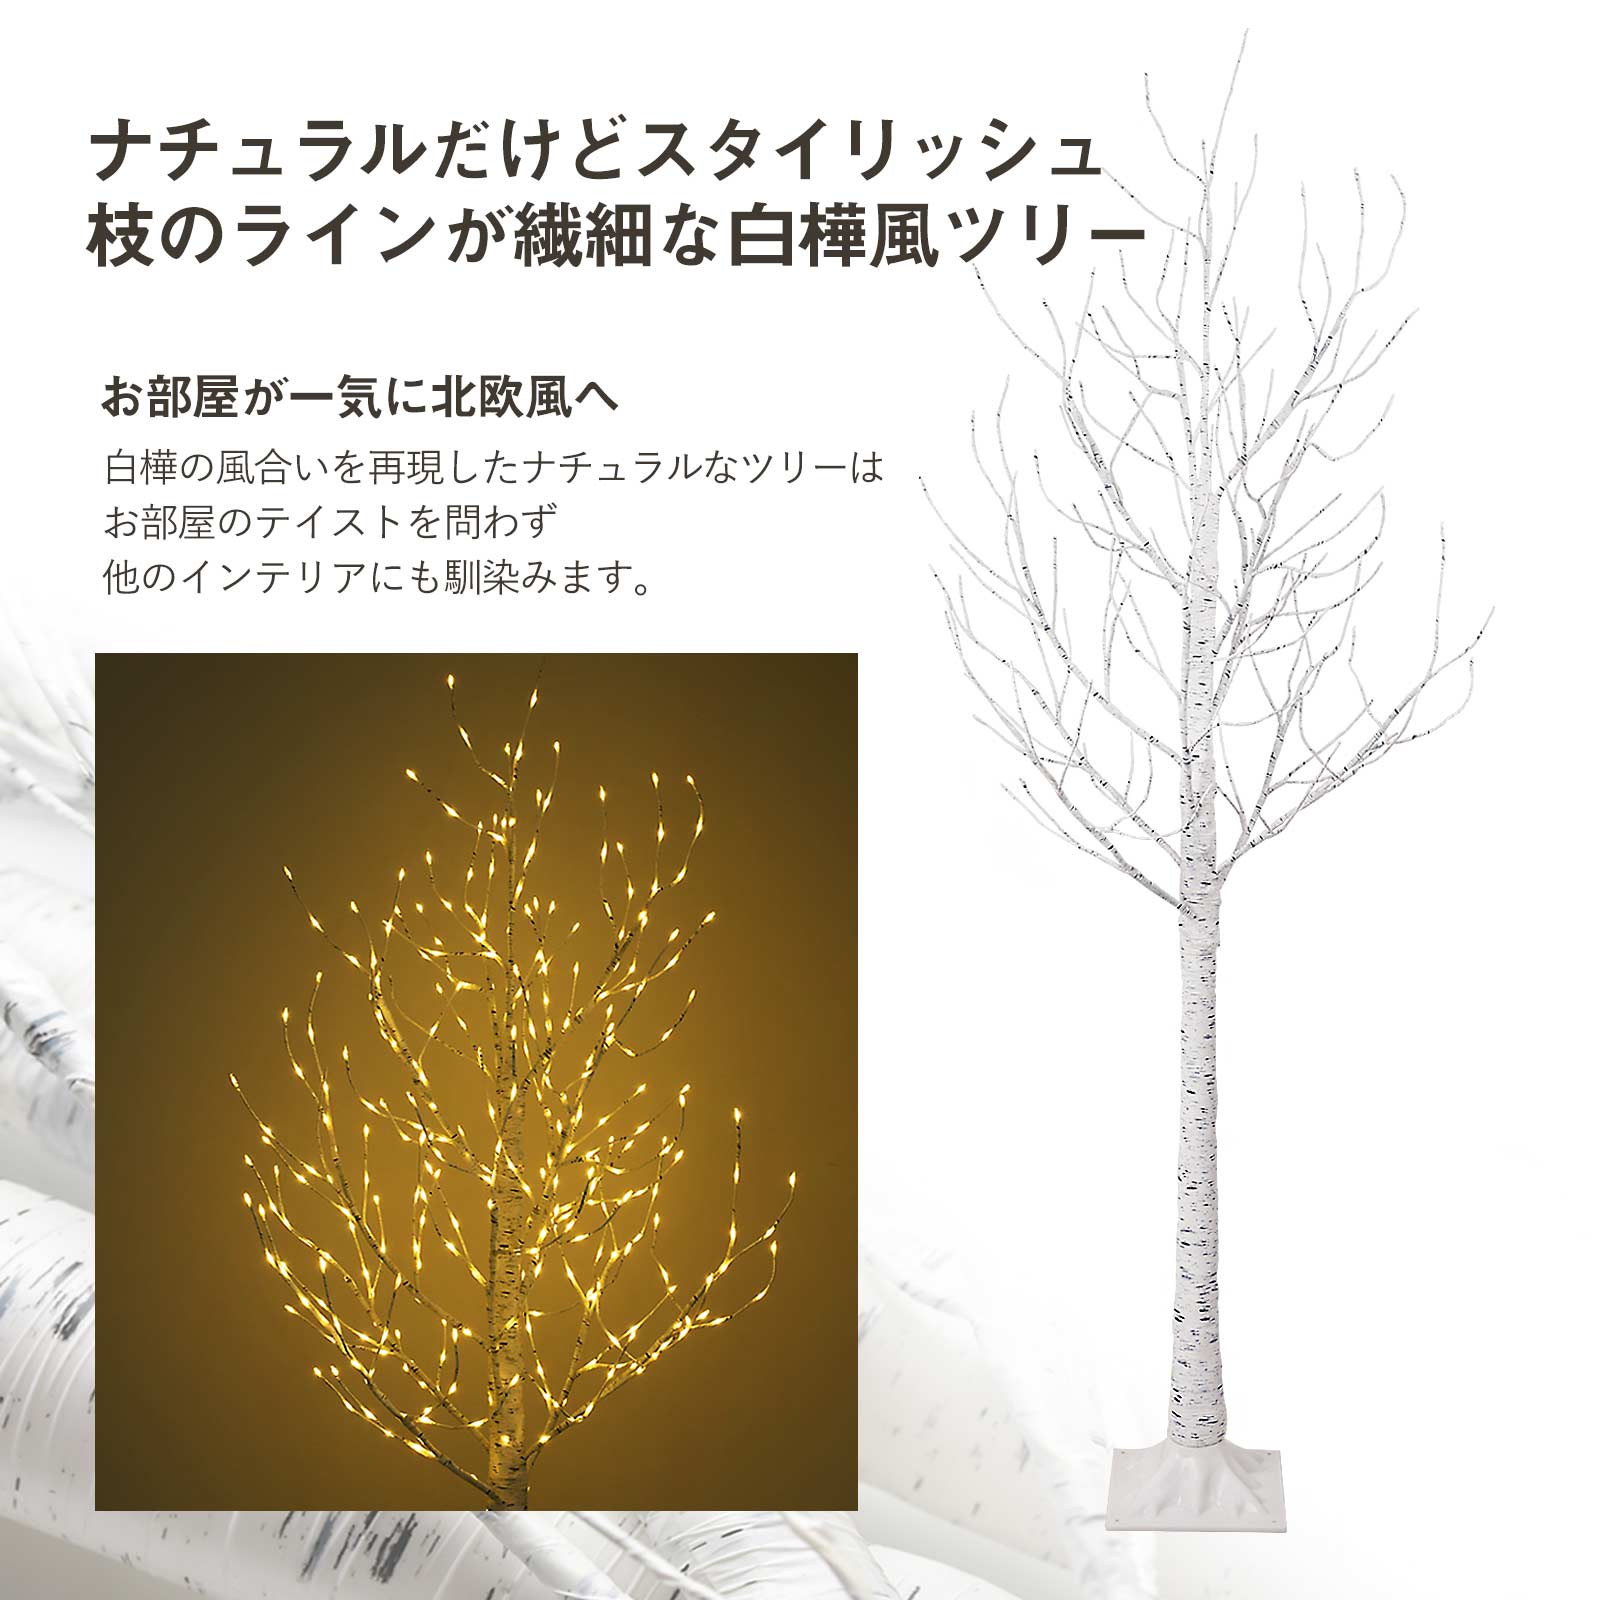 【楽天市場】クリスマスツリー 白樺 ツリー オーナメント セット